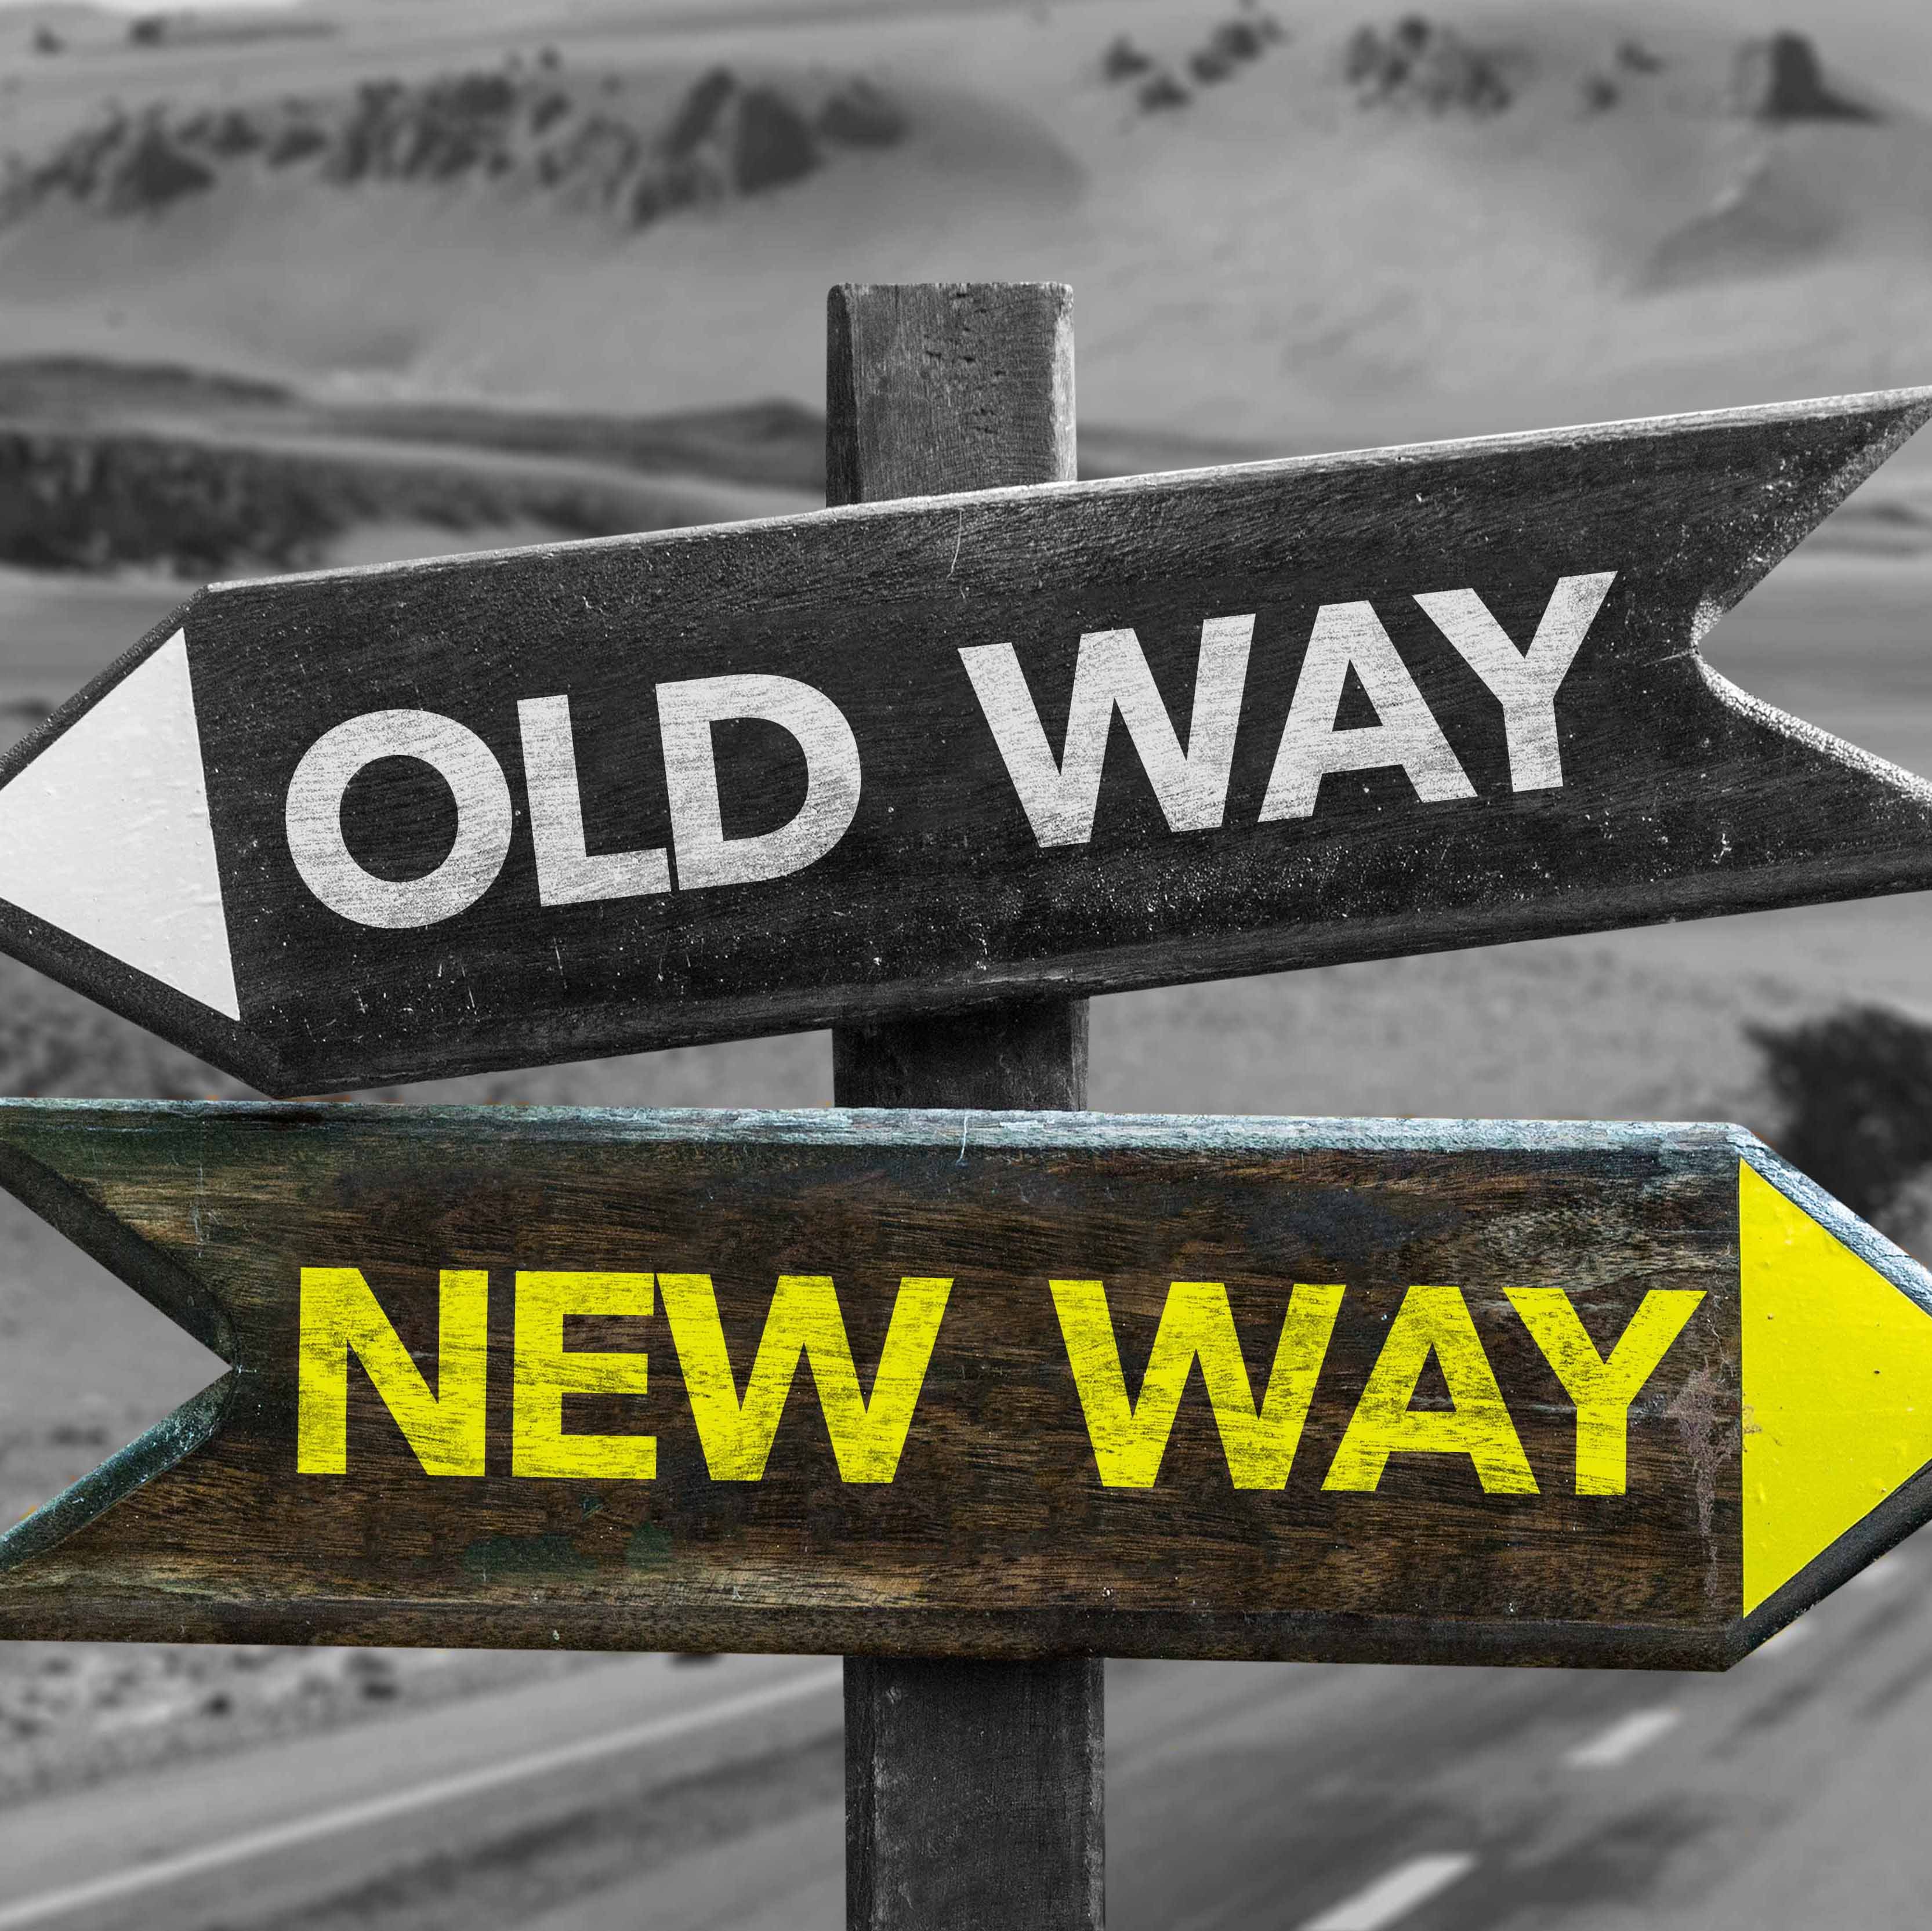 Old Way x New Way Crossroad - NMEDA